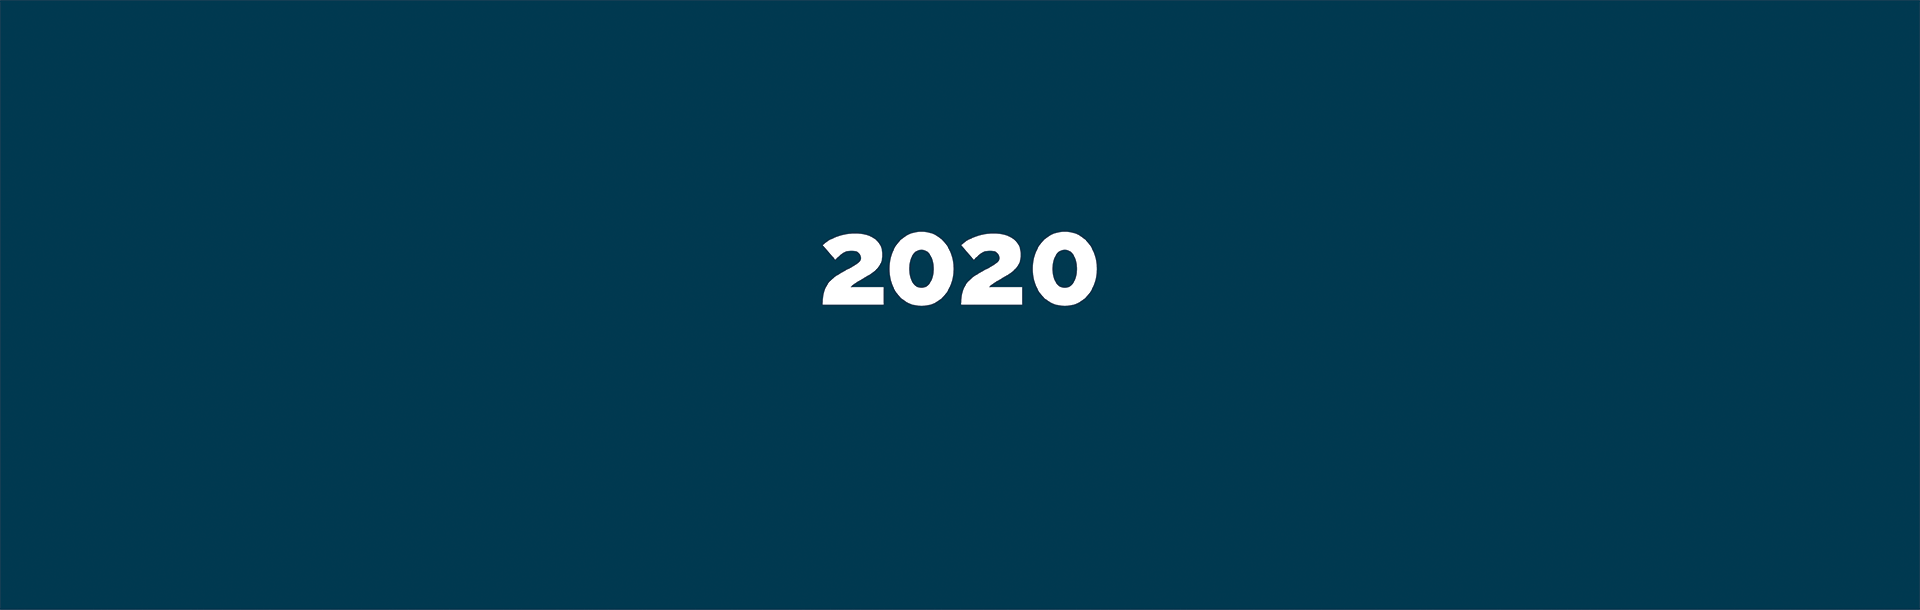 2020_Infographic